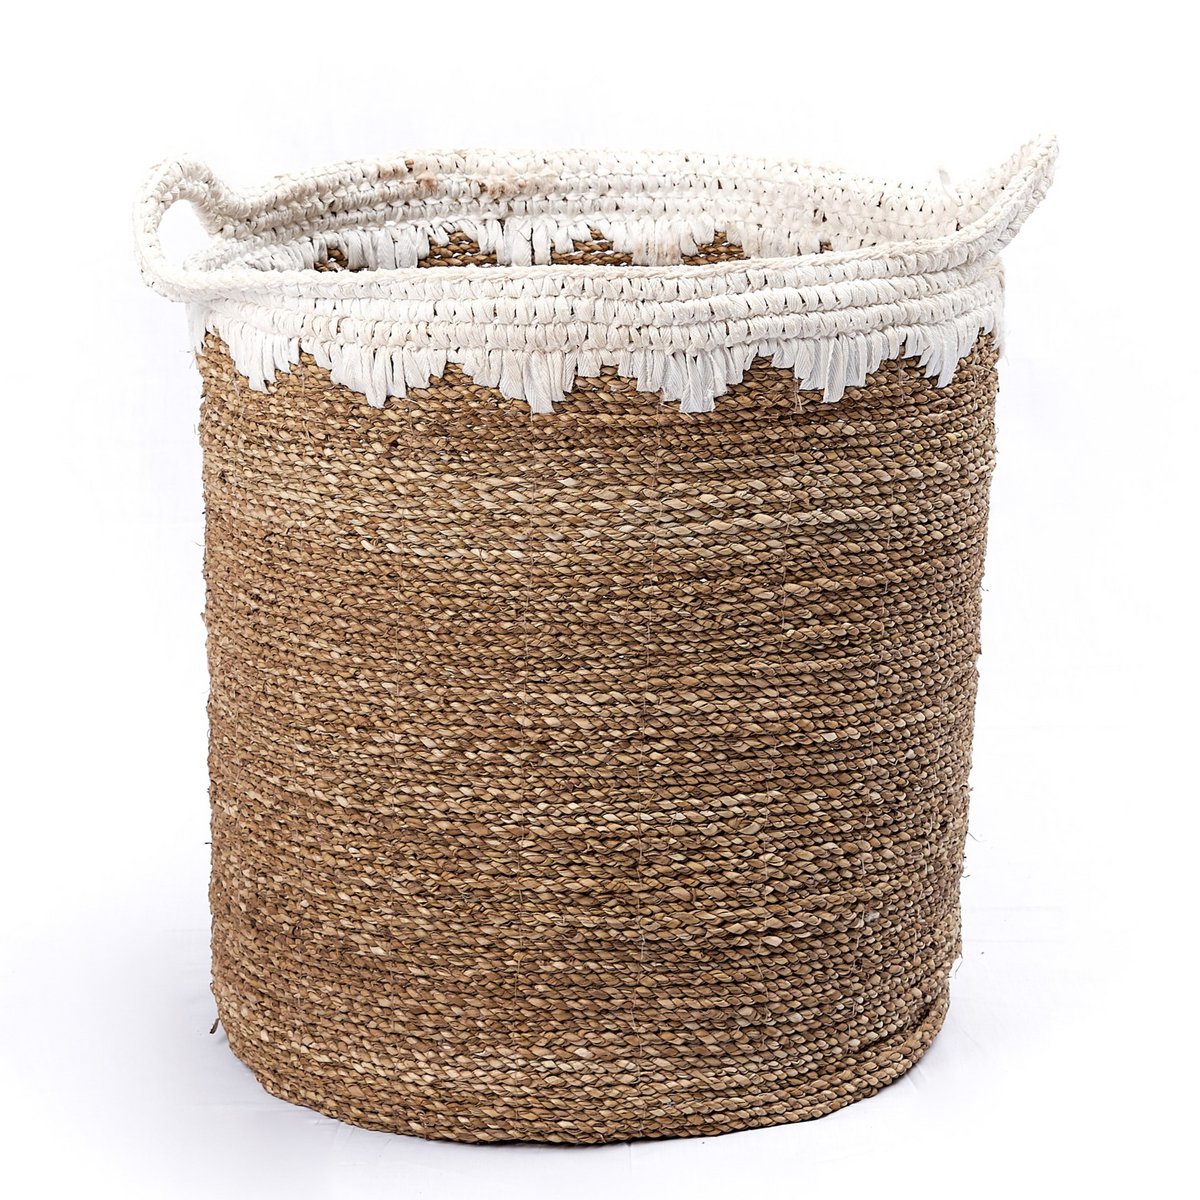 Grand panier à linge rond panier de rangement panier à plantes tissé en fibres naturelles NIAS blanc (2 tailles)